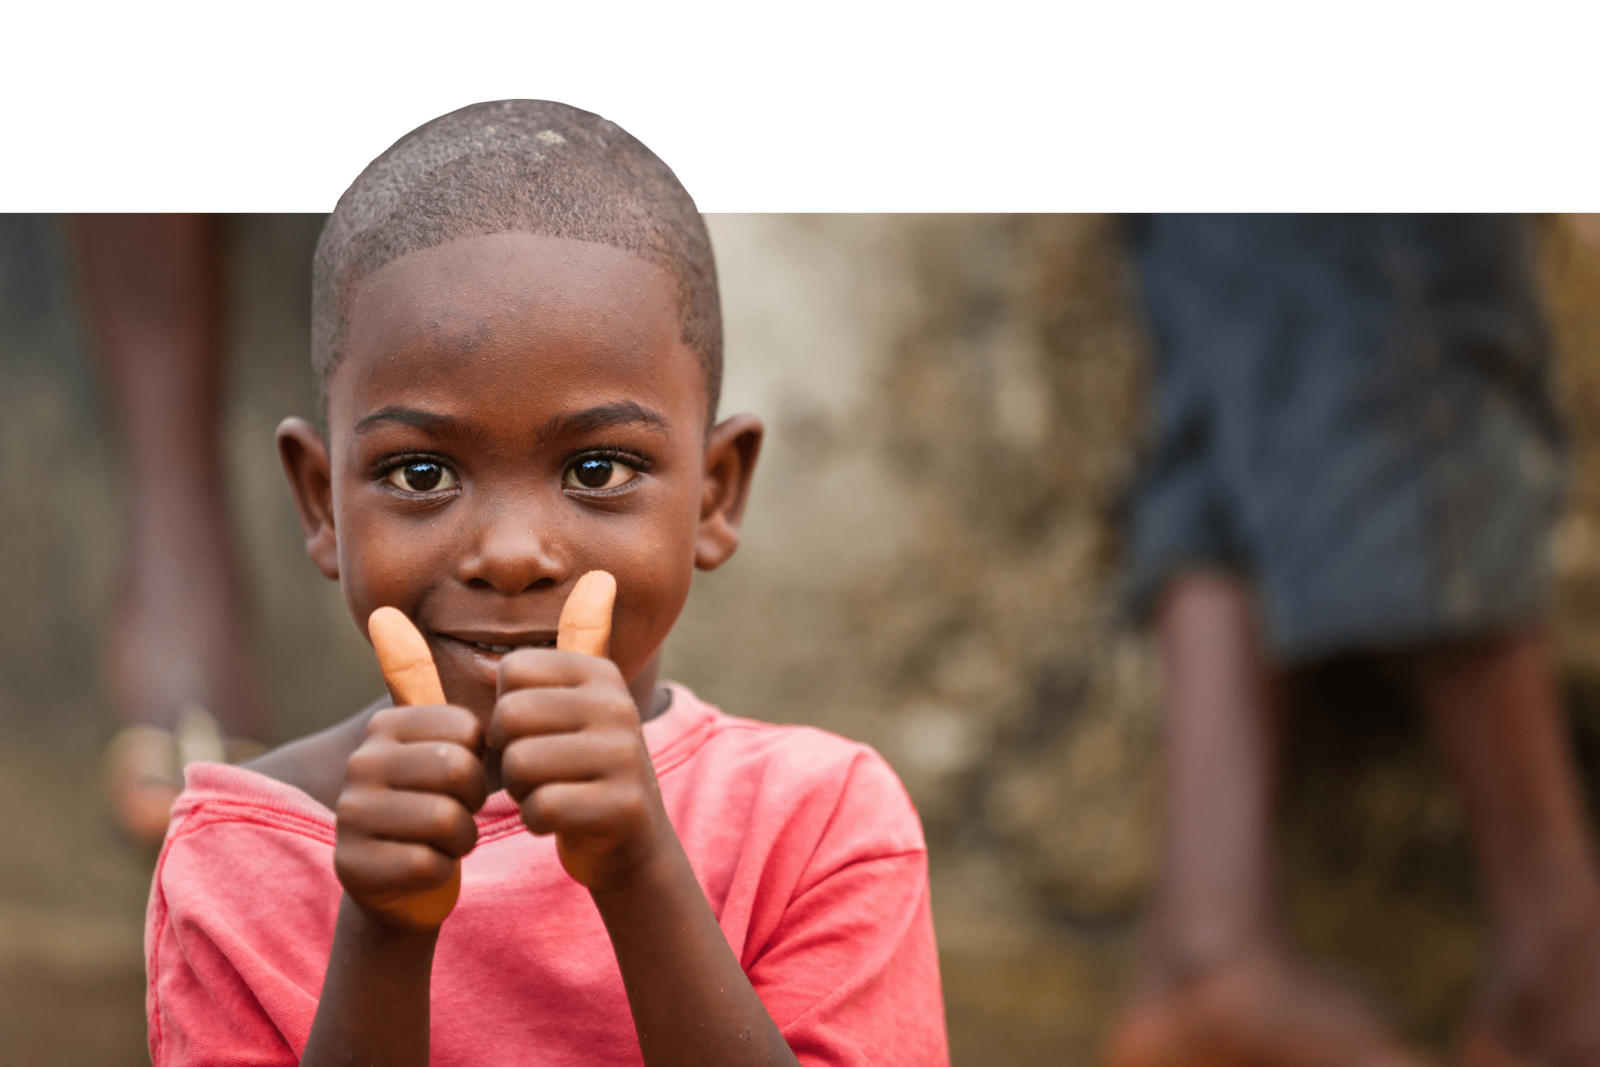 Quỹ Đầu tư trẻ em (CIFF) là một tổ chức quốc tế có nhiệm vụ hỗ trợ cho trẻ em trên toàn cầu. Hãy cùng tìm hiểu về các dự án và chương trình của CIFF thông qua những hình ảnh đầy tính nhân văn và ý nghĩa. Mỗi lượt xem của bạn cũng có thể góp phần giúp đỡ cho các em nhỏ rất nhiều đấy!